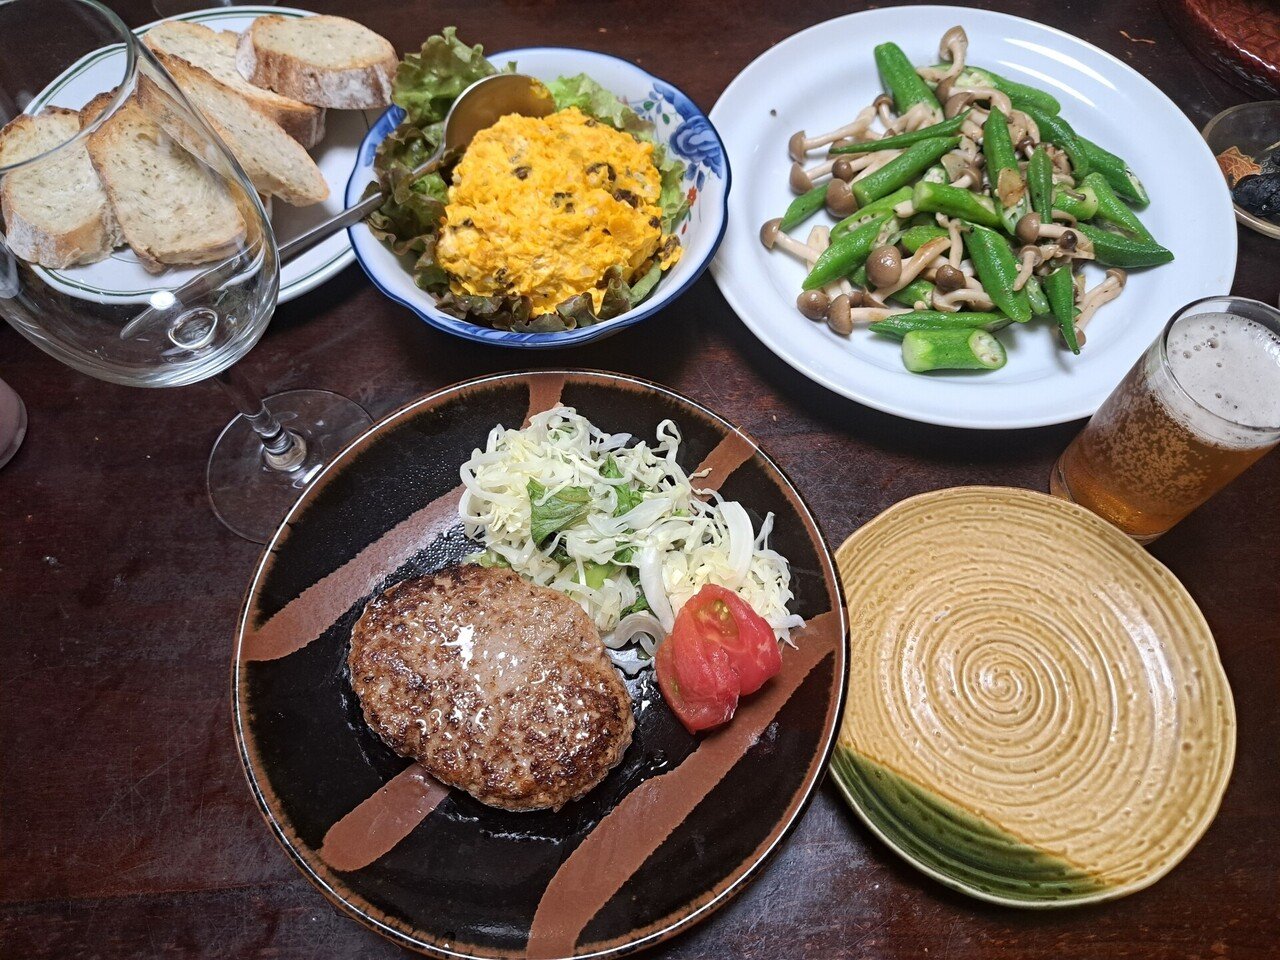 8月27日の晩ごはん ・ハンバーグ(生協の冷凍食品) ・カボチャサラダ